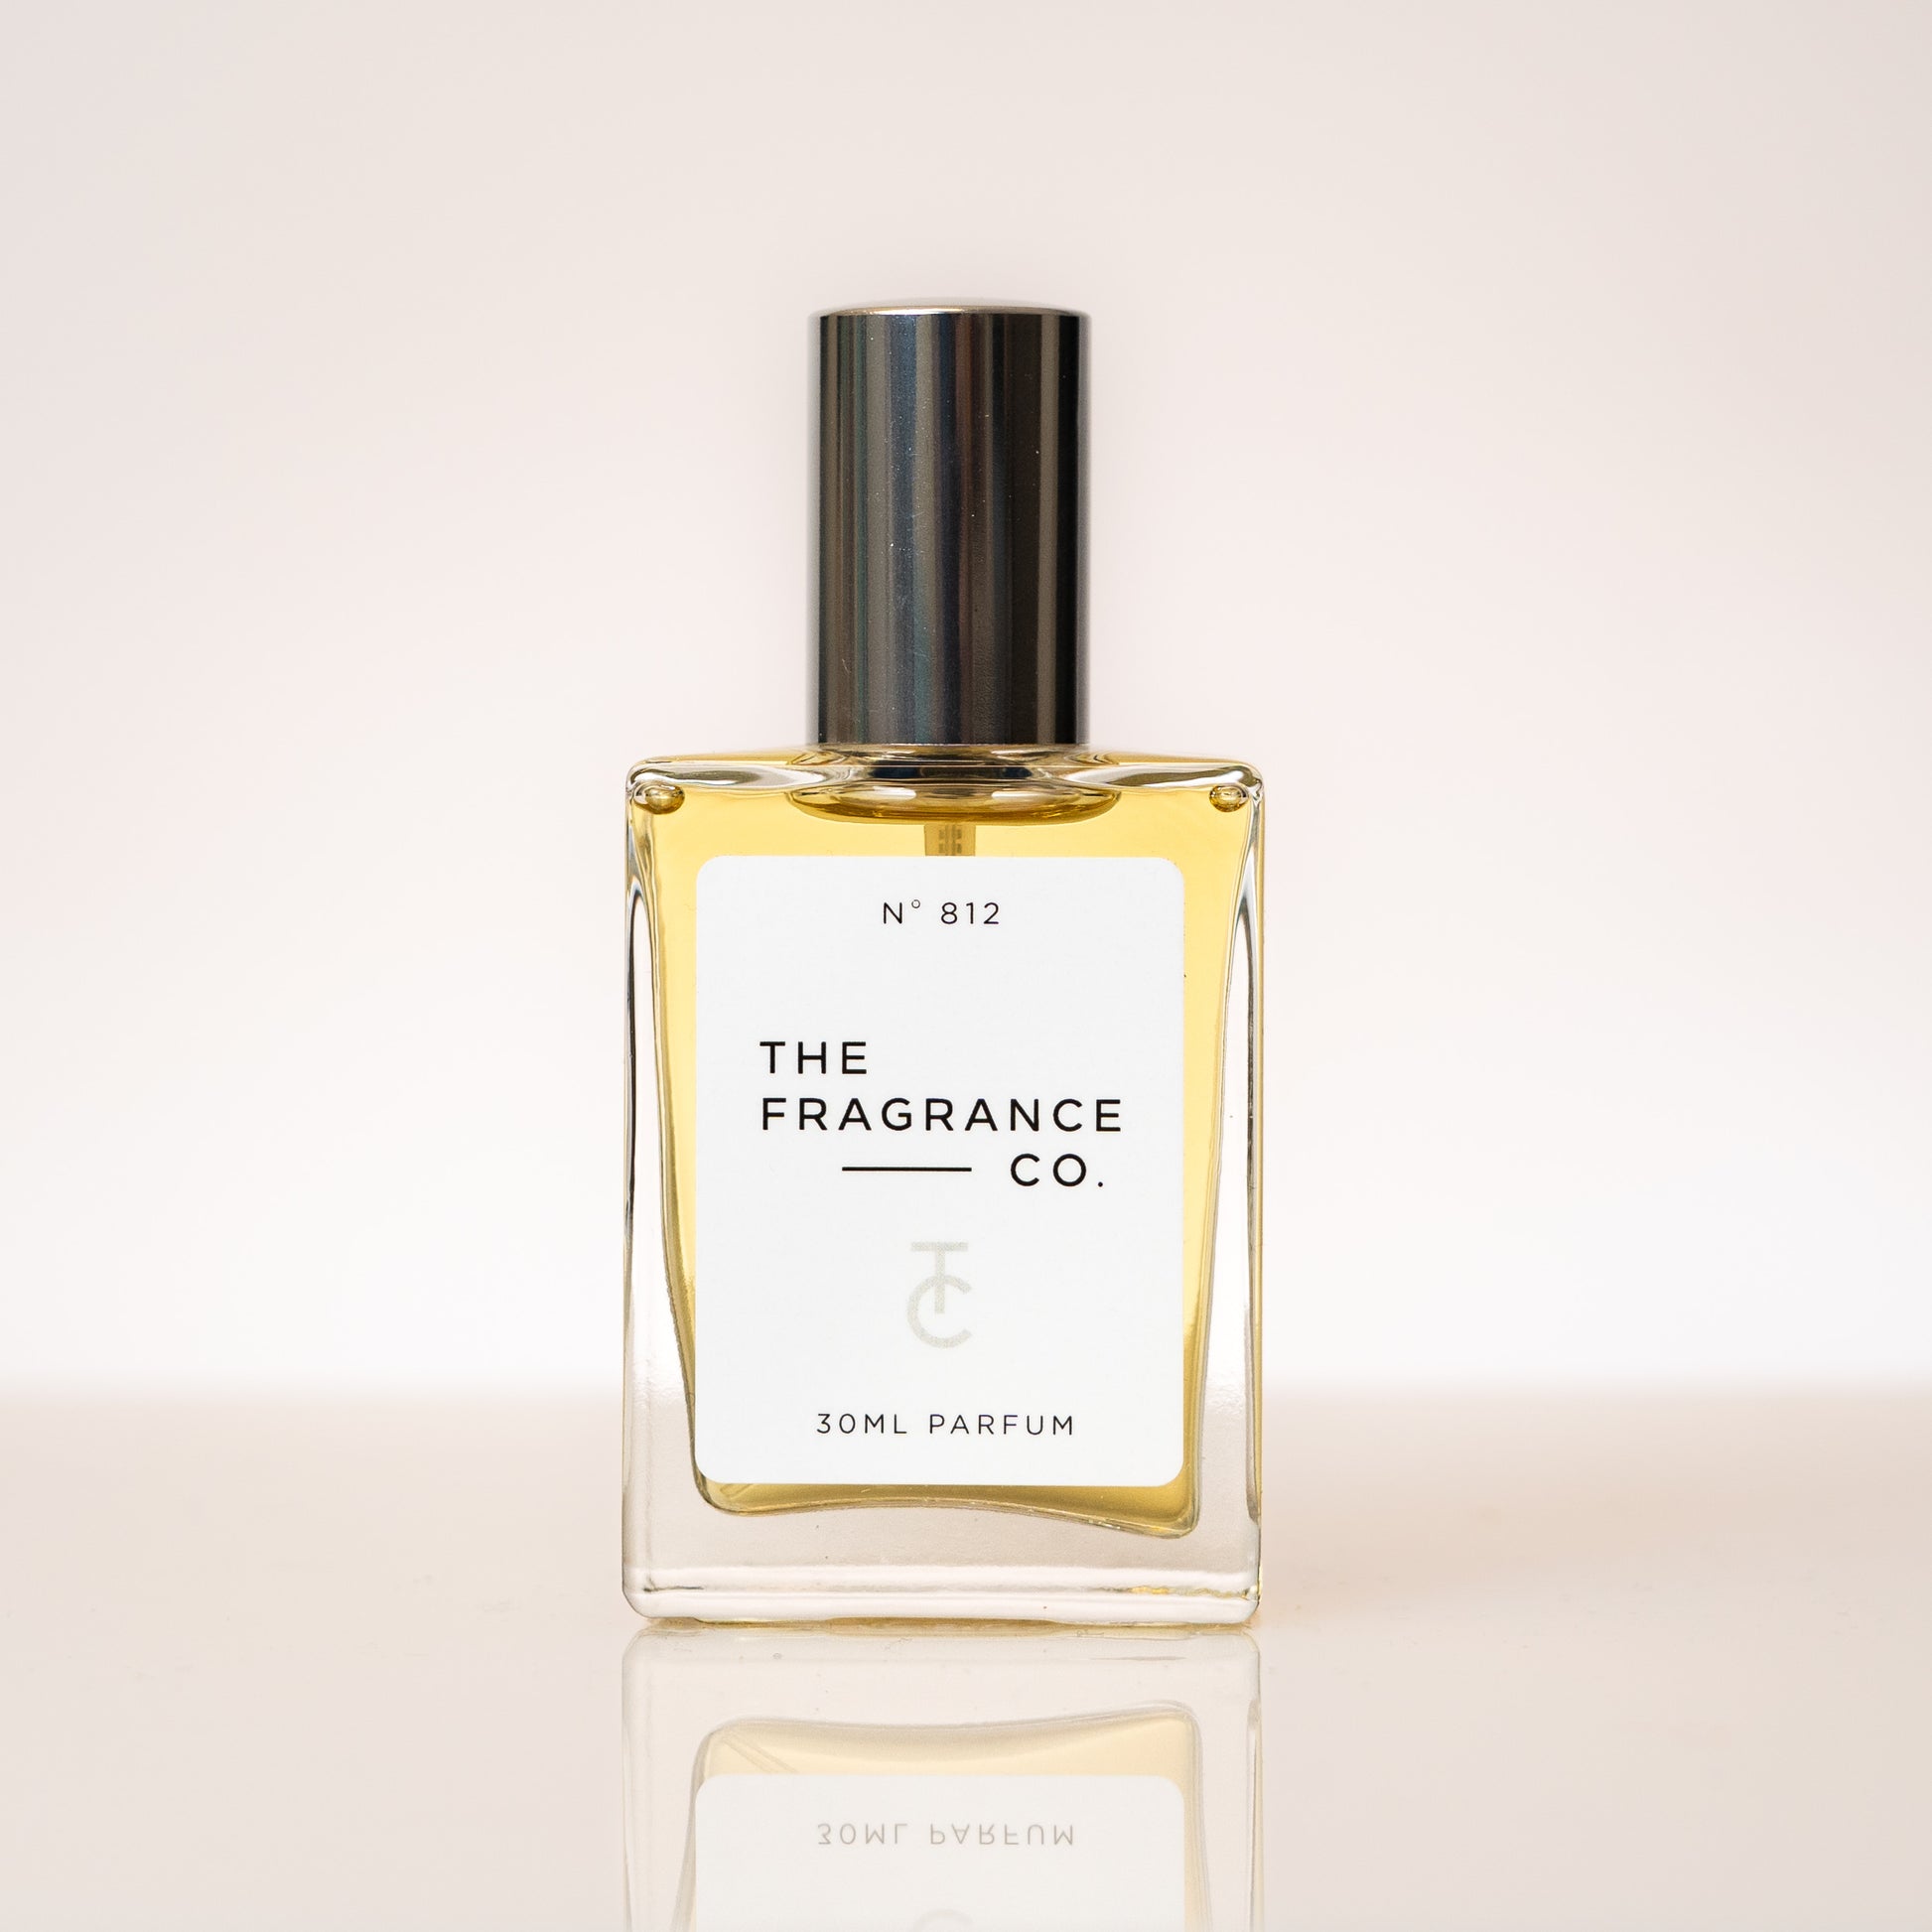 Inspired by Mugler Alien Cheap perfume for women dupe - 30ml